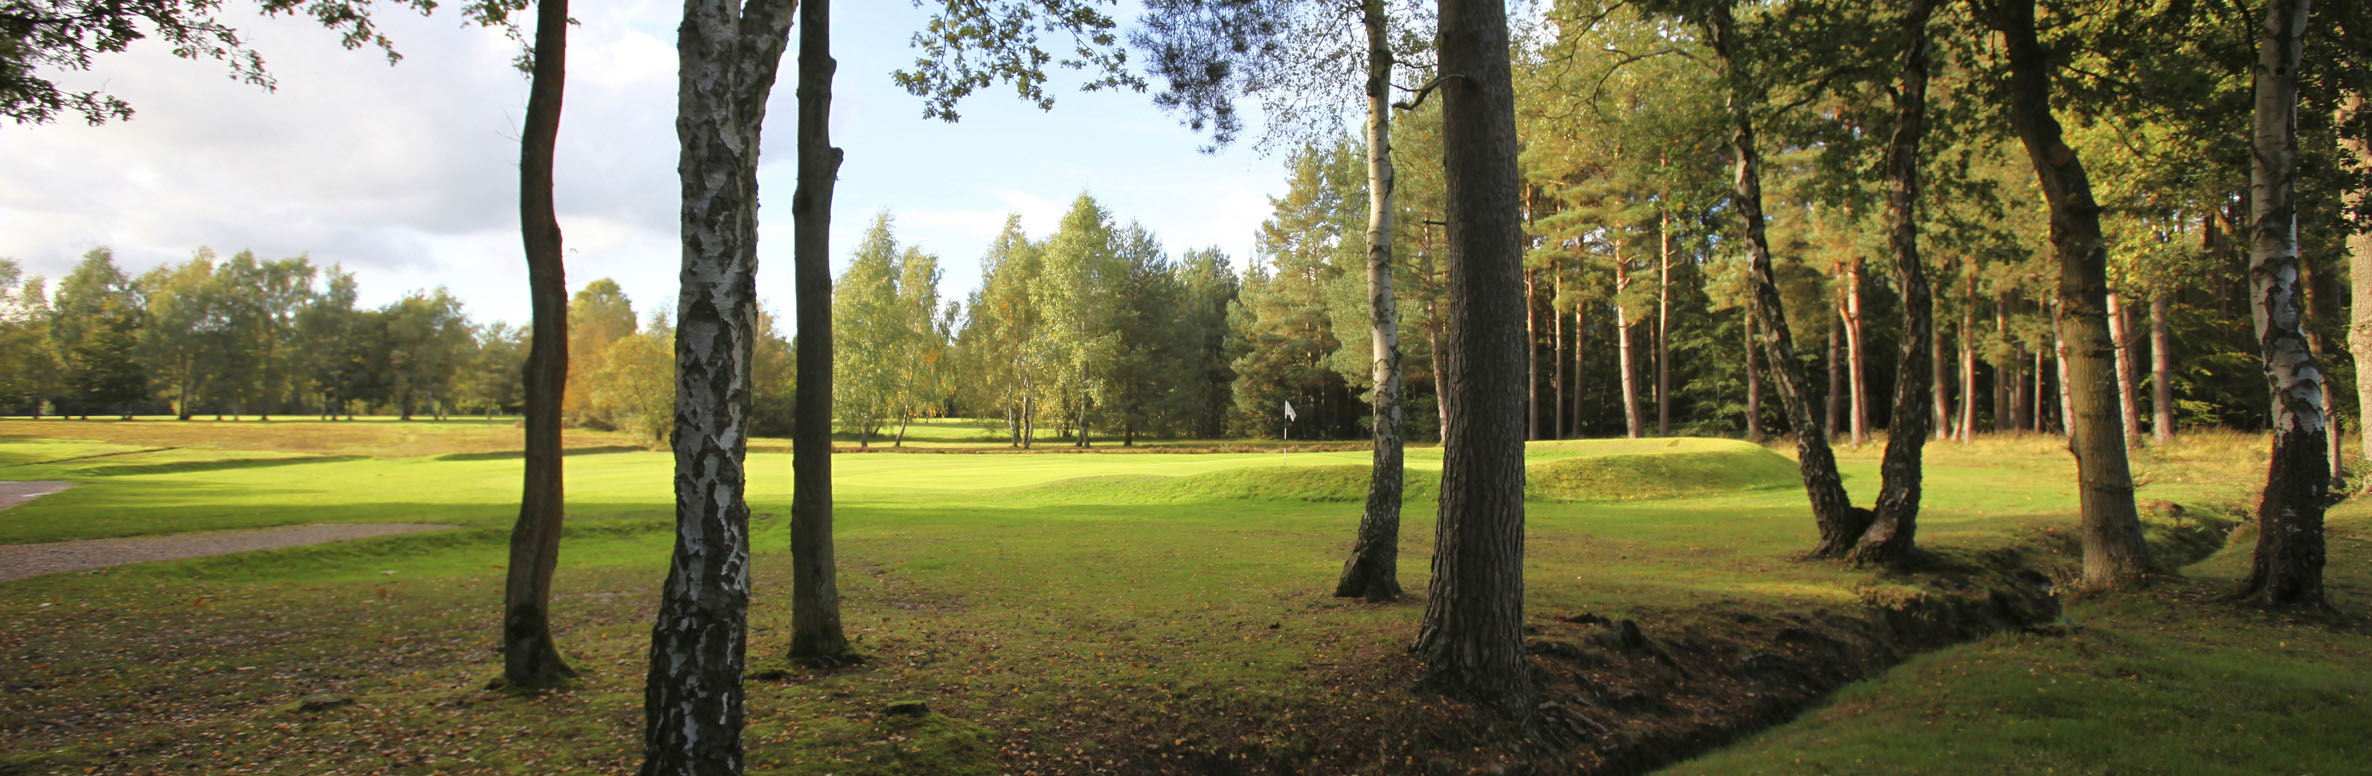 Golf Course Image - Copthorne Golf Club No. 3